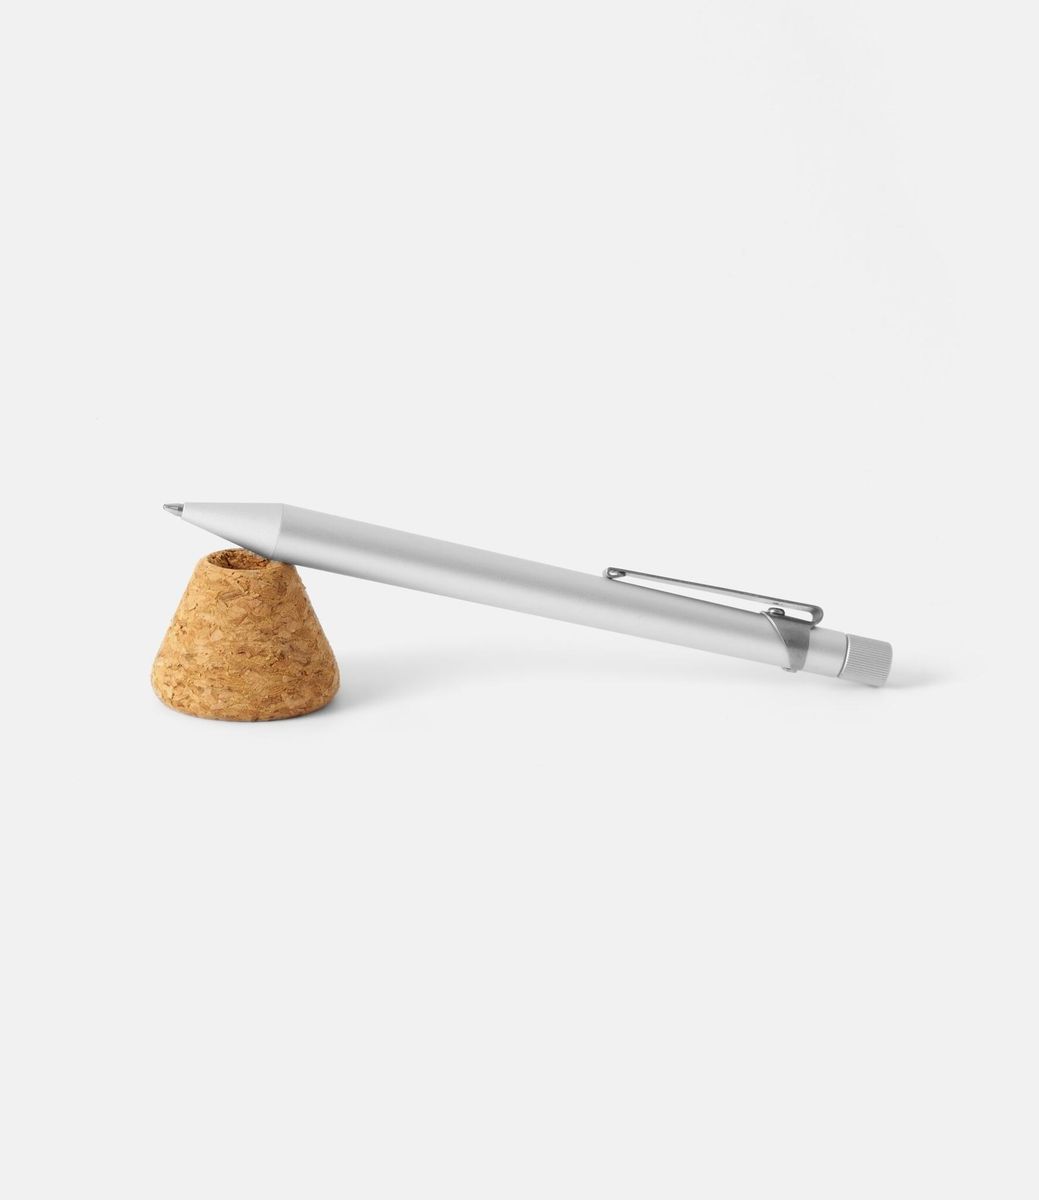 Makers Cabinet Lazlo — настольная ручка из алюминия